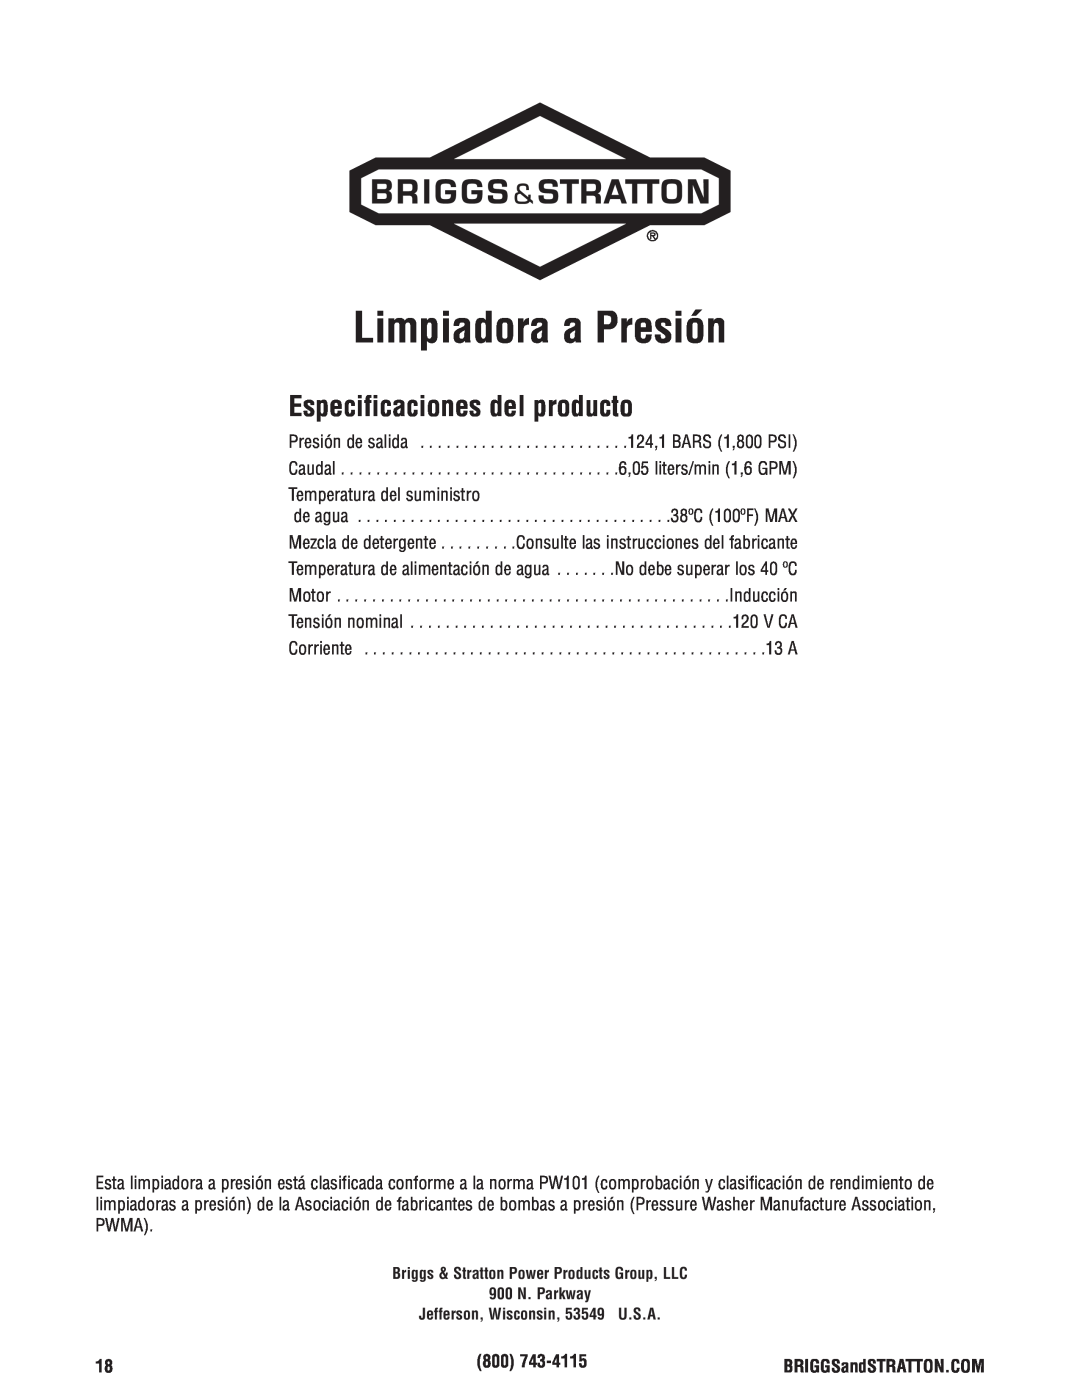 Briggs & Stratton Electric Pressure Washer manual Limpiadora a Presión, Especificaciones del producto 